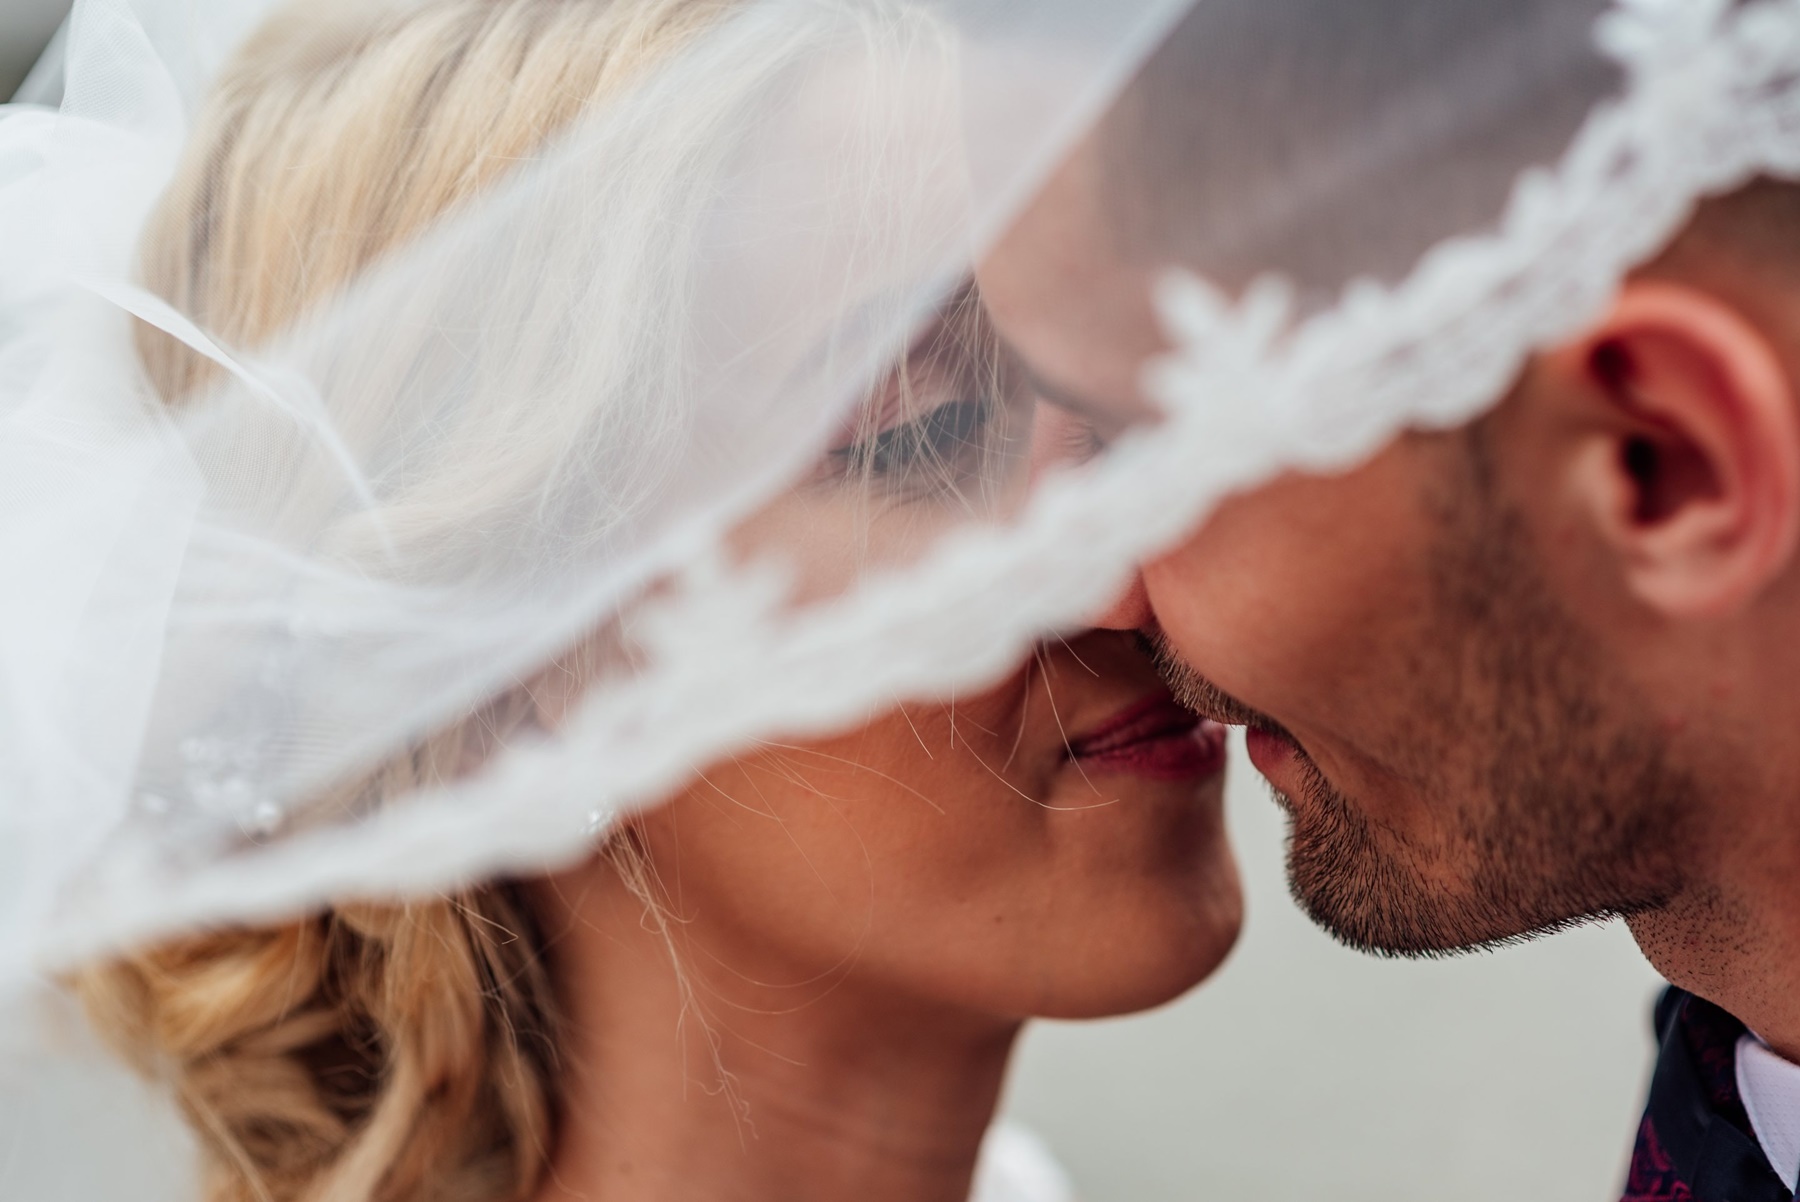 Γάμοι 2021 άτομα – μέτρα: Τι θα ισχύει, όσα είπε ο Παπαθανάσης